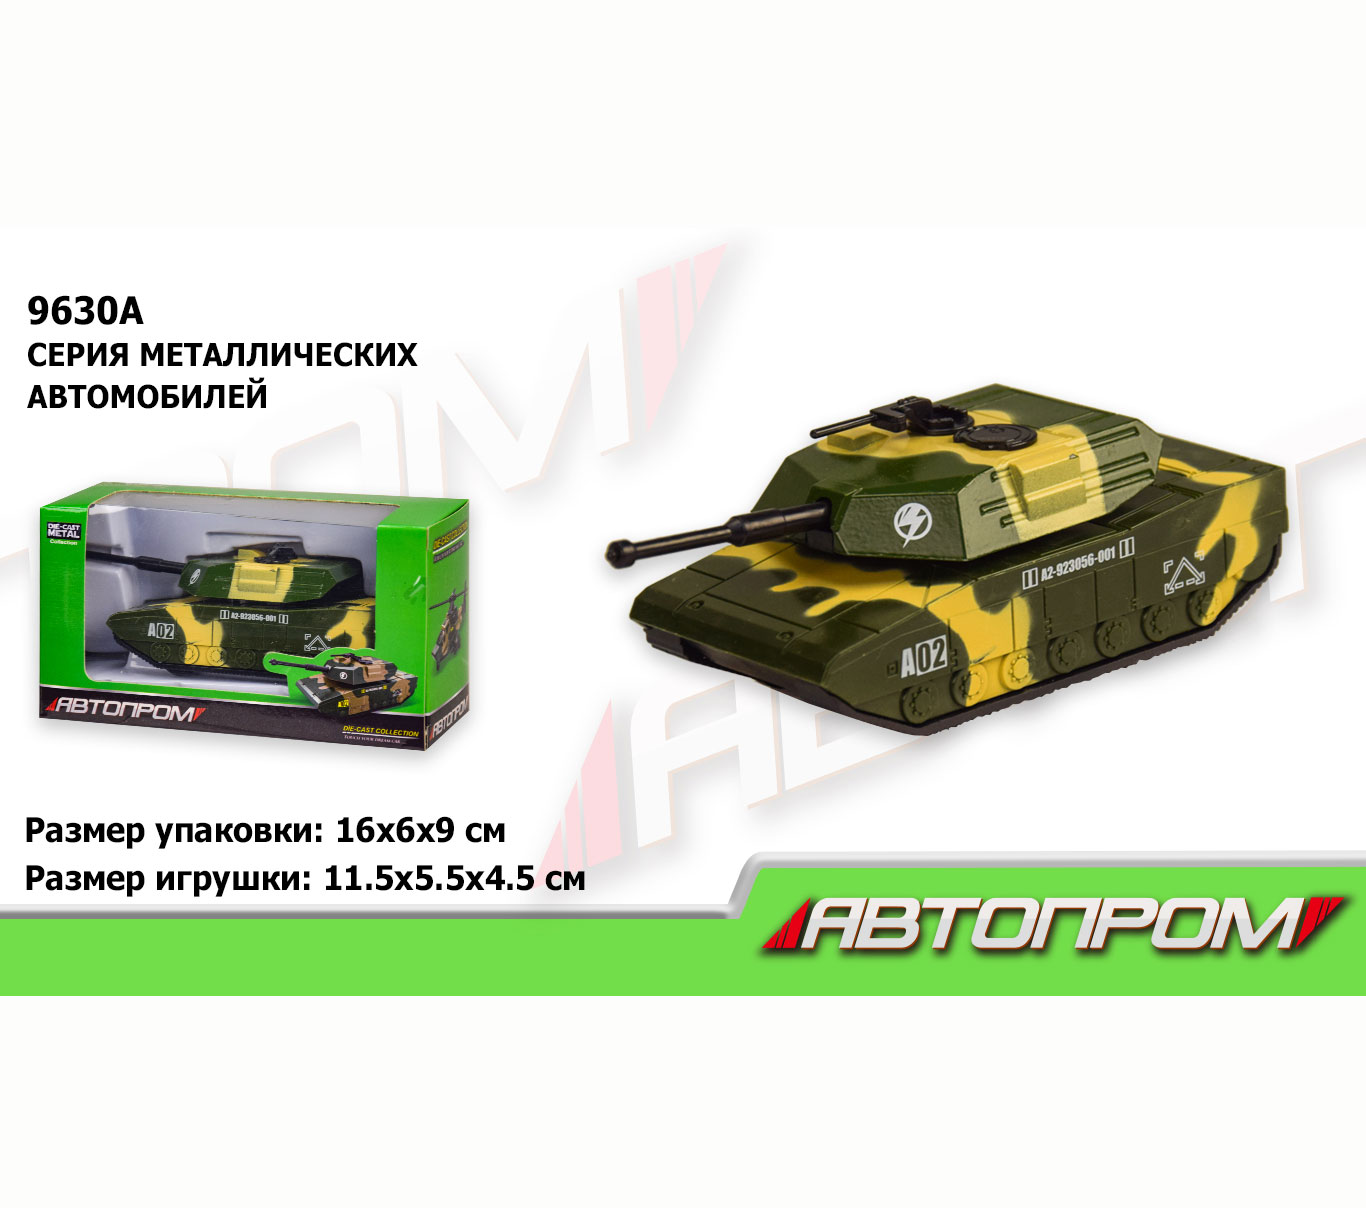 Модель модель танка 'Автопром'